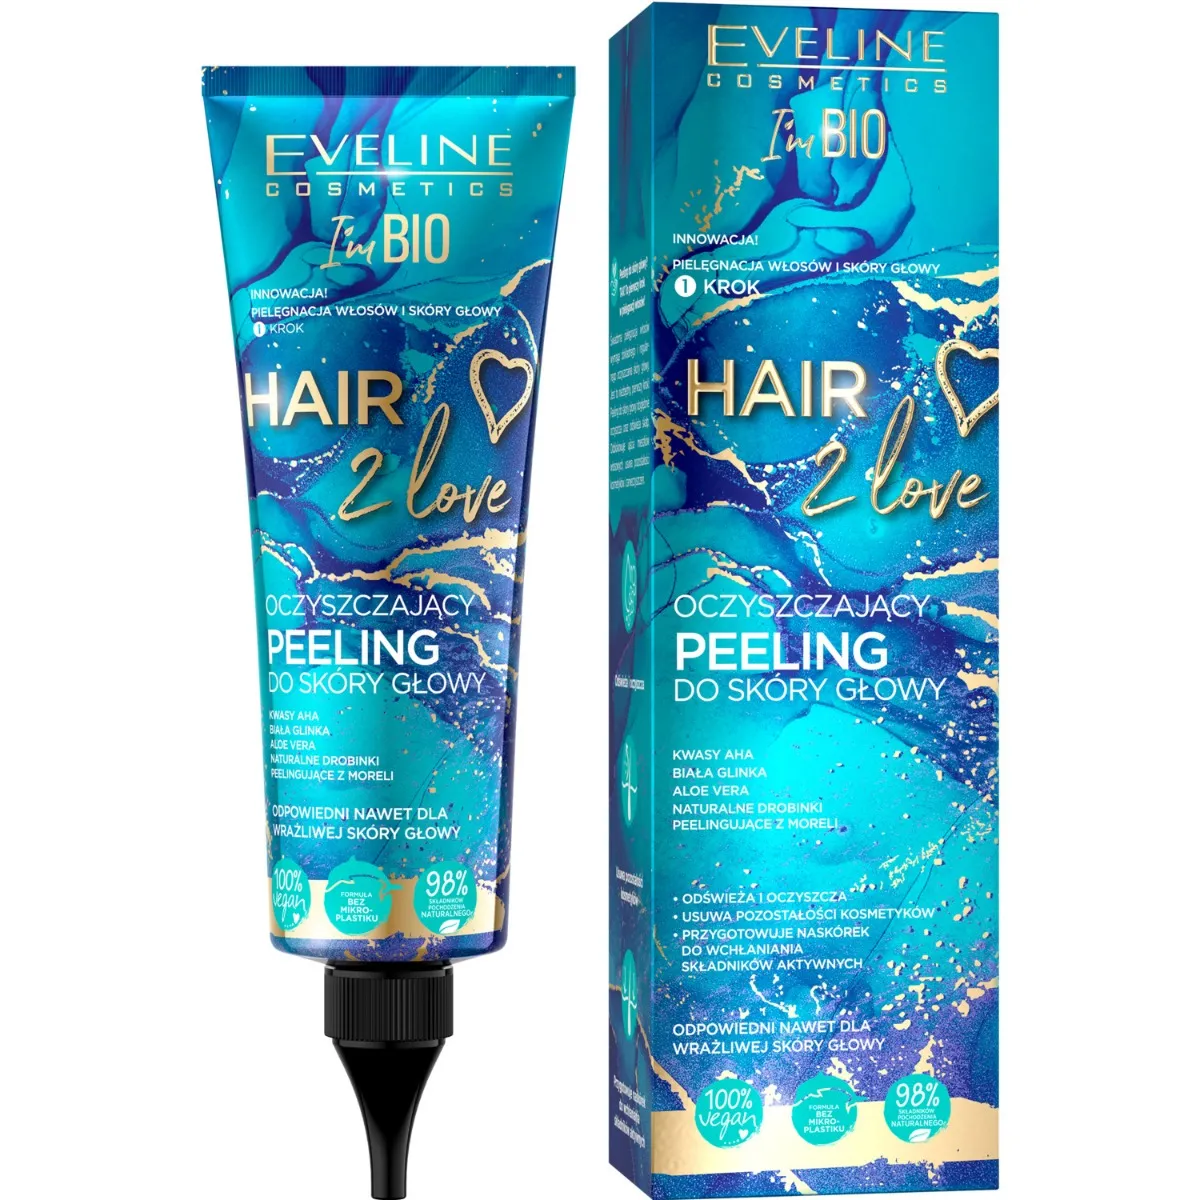 Eveline Cosmetics Hair 2 Love oczyszczający peeling do skóry głowy, 125 ml